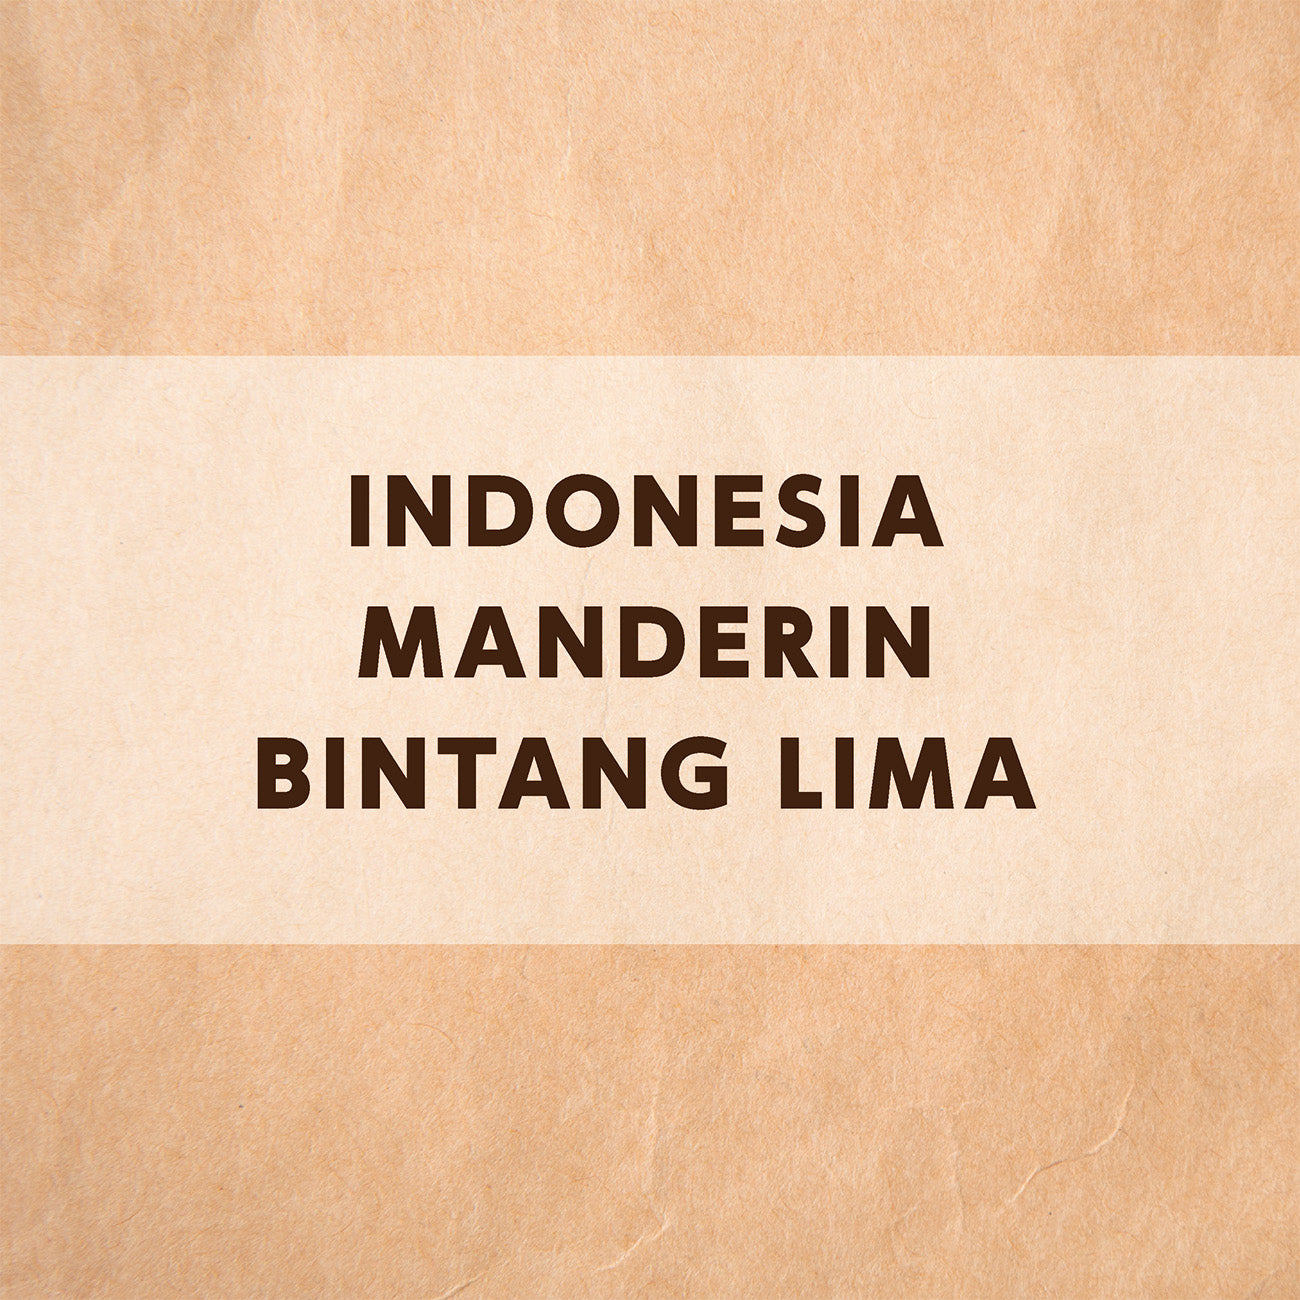 インドネシア マンデリン ビンタンリマ